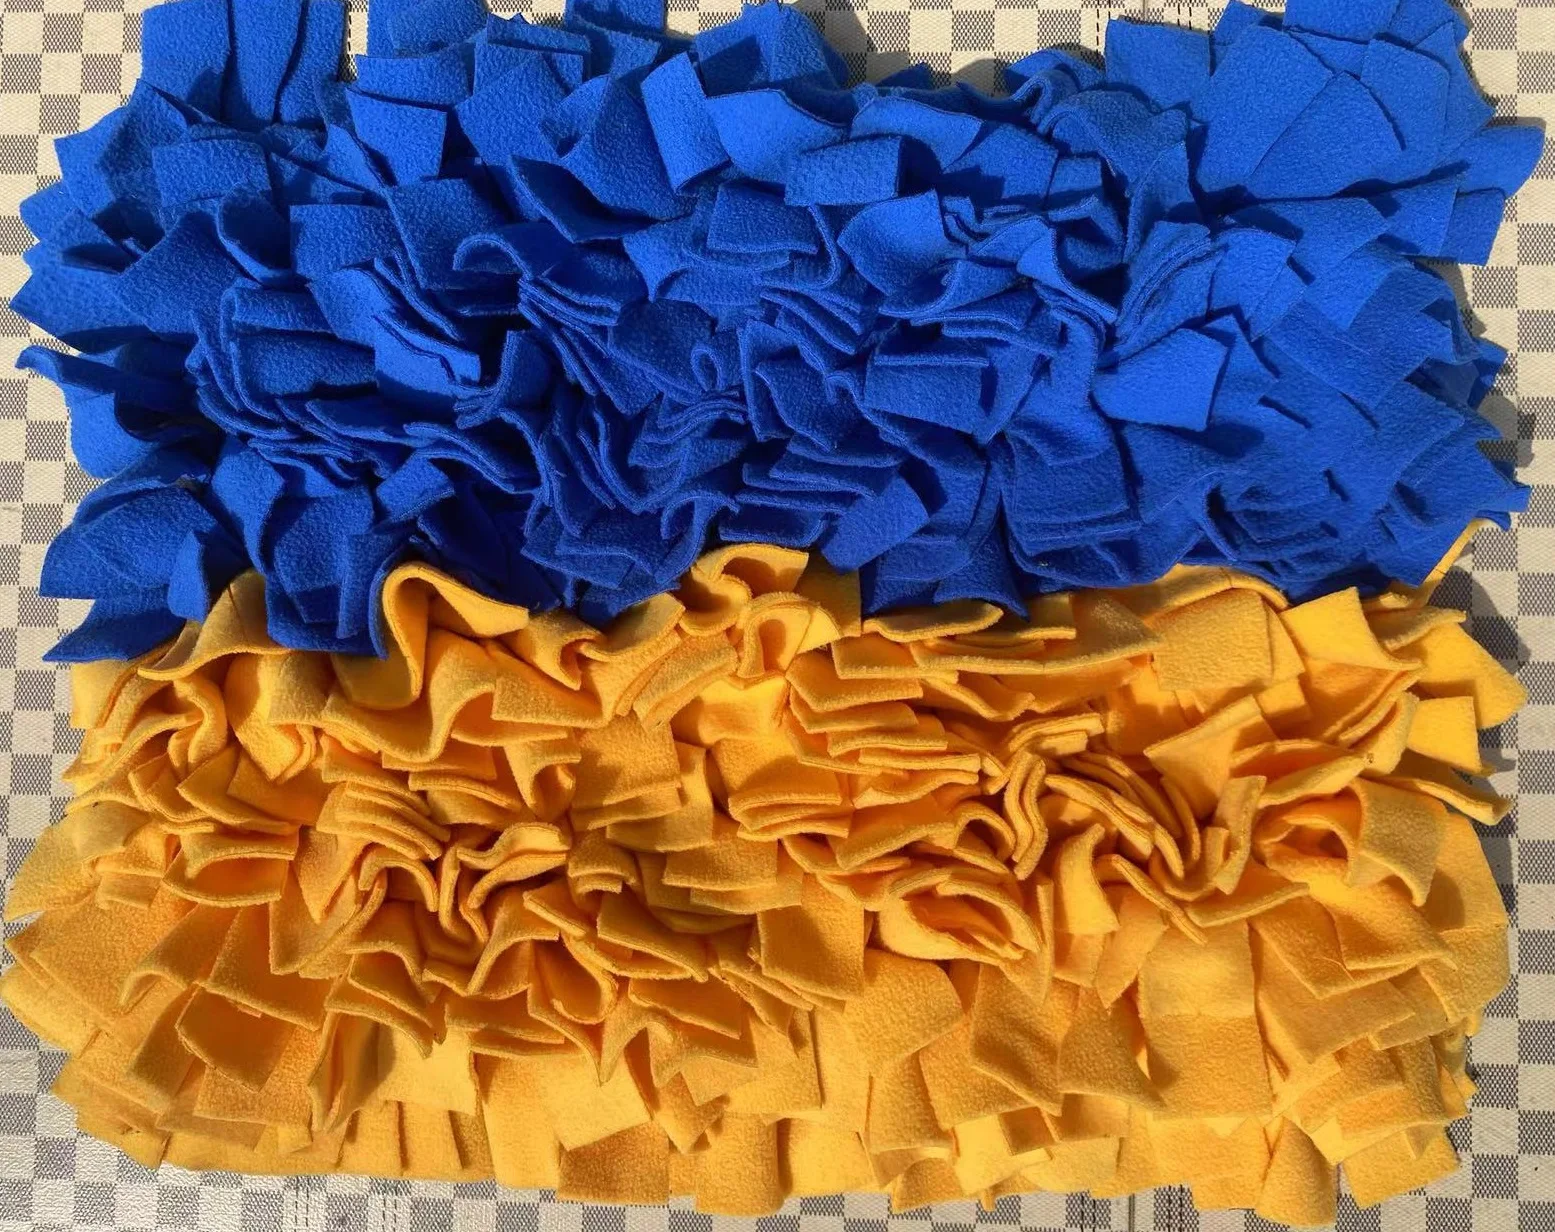 Синий и желтый, размер 45x60 см, сшитый из флиса, коврик для кормления крупных собак, коврик для нюхания собак крупных пород 0